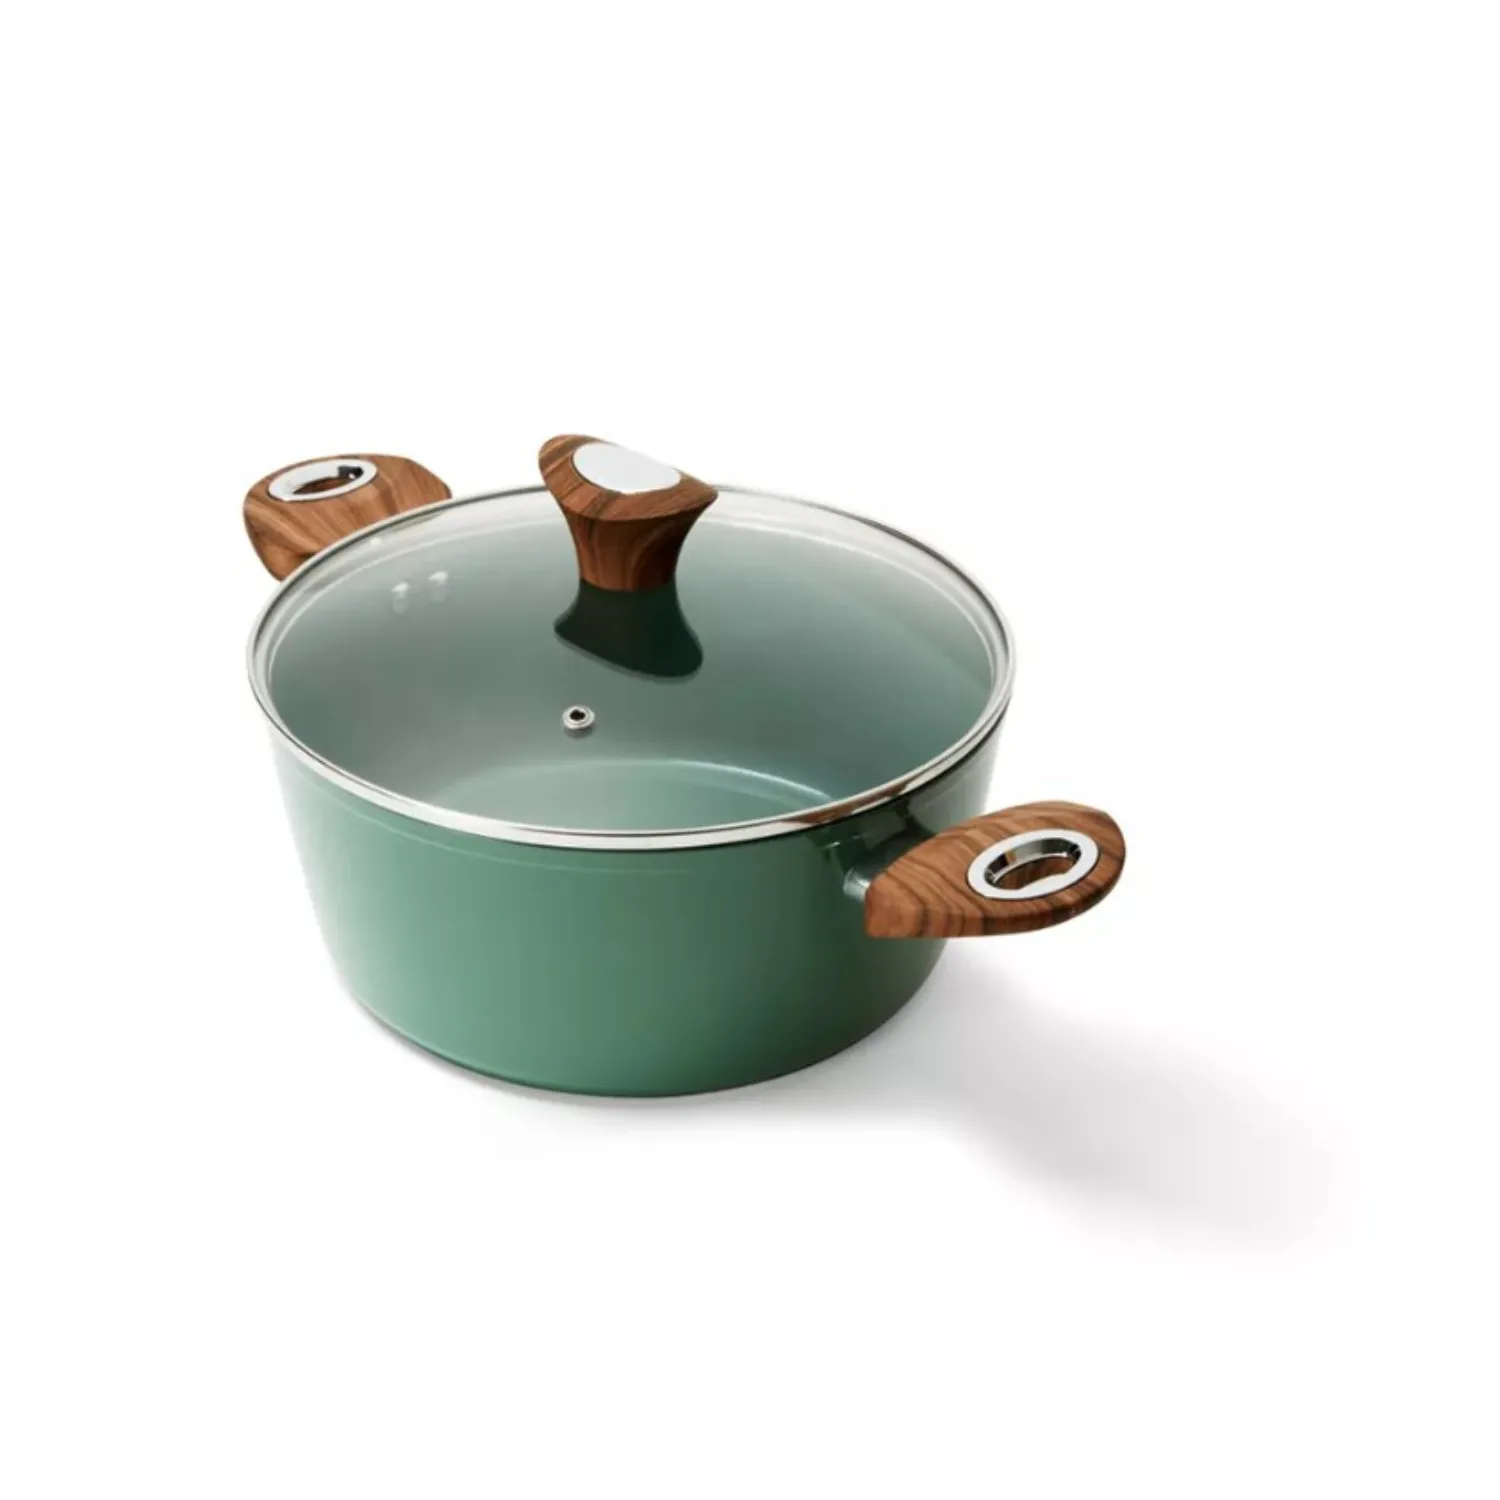 Lebensmittel Kochtopf Auflauf mit antikem Design Edelstahl hellgrüne Farbe Hotpot Aufläufe Kochgeschirr Set Küchen geschirr